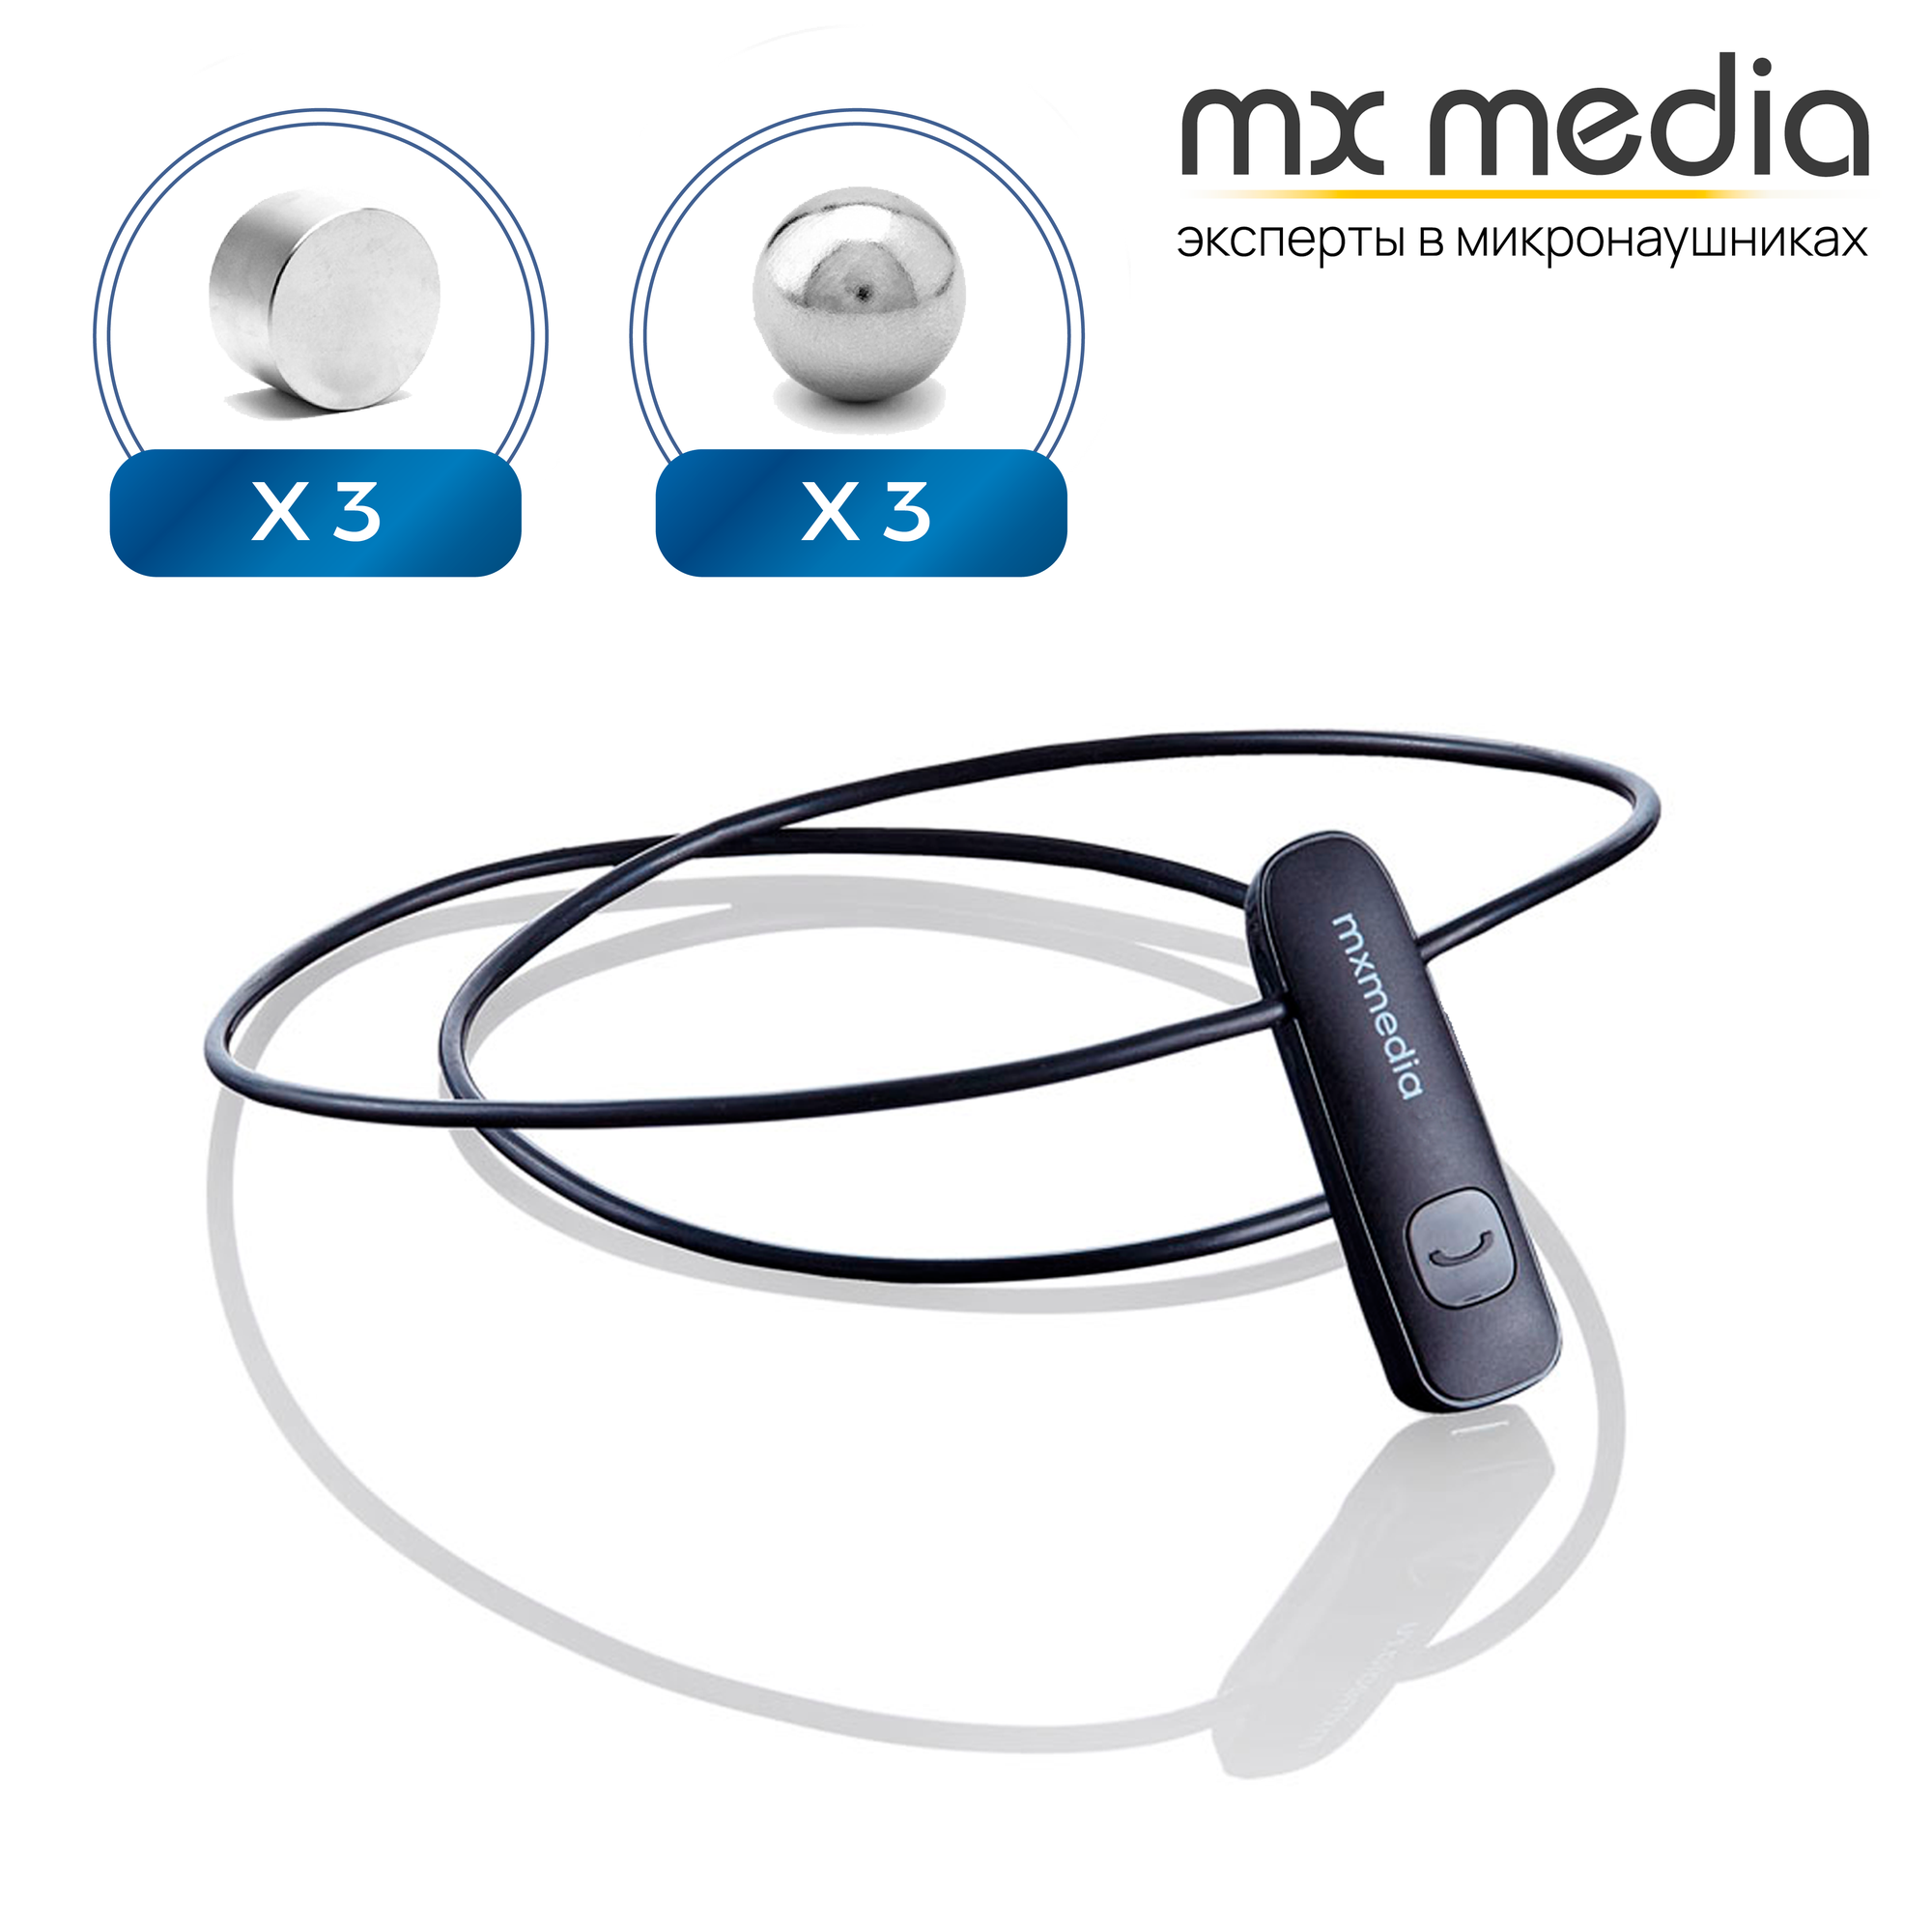 Микронаушник Mxmedia магнитный Magnet Bluetooth встроенный микрофон с невидимыми наушниками